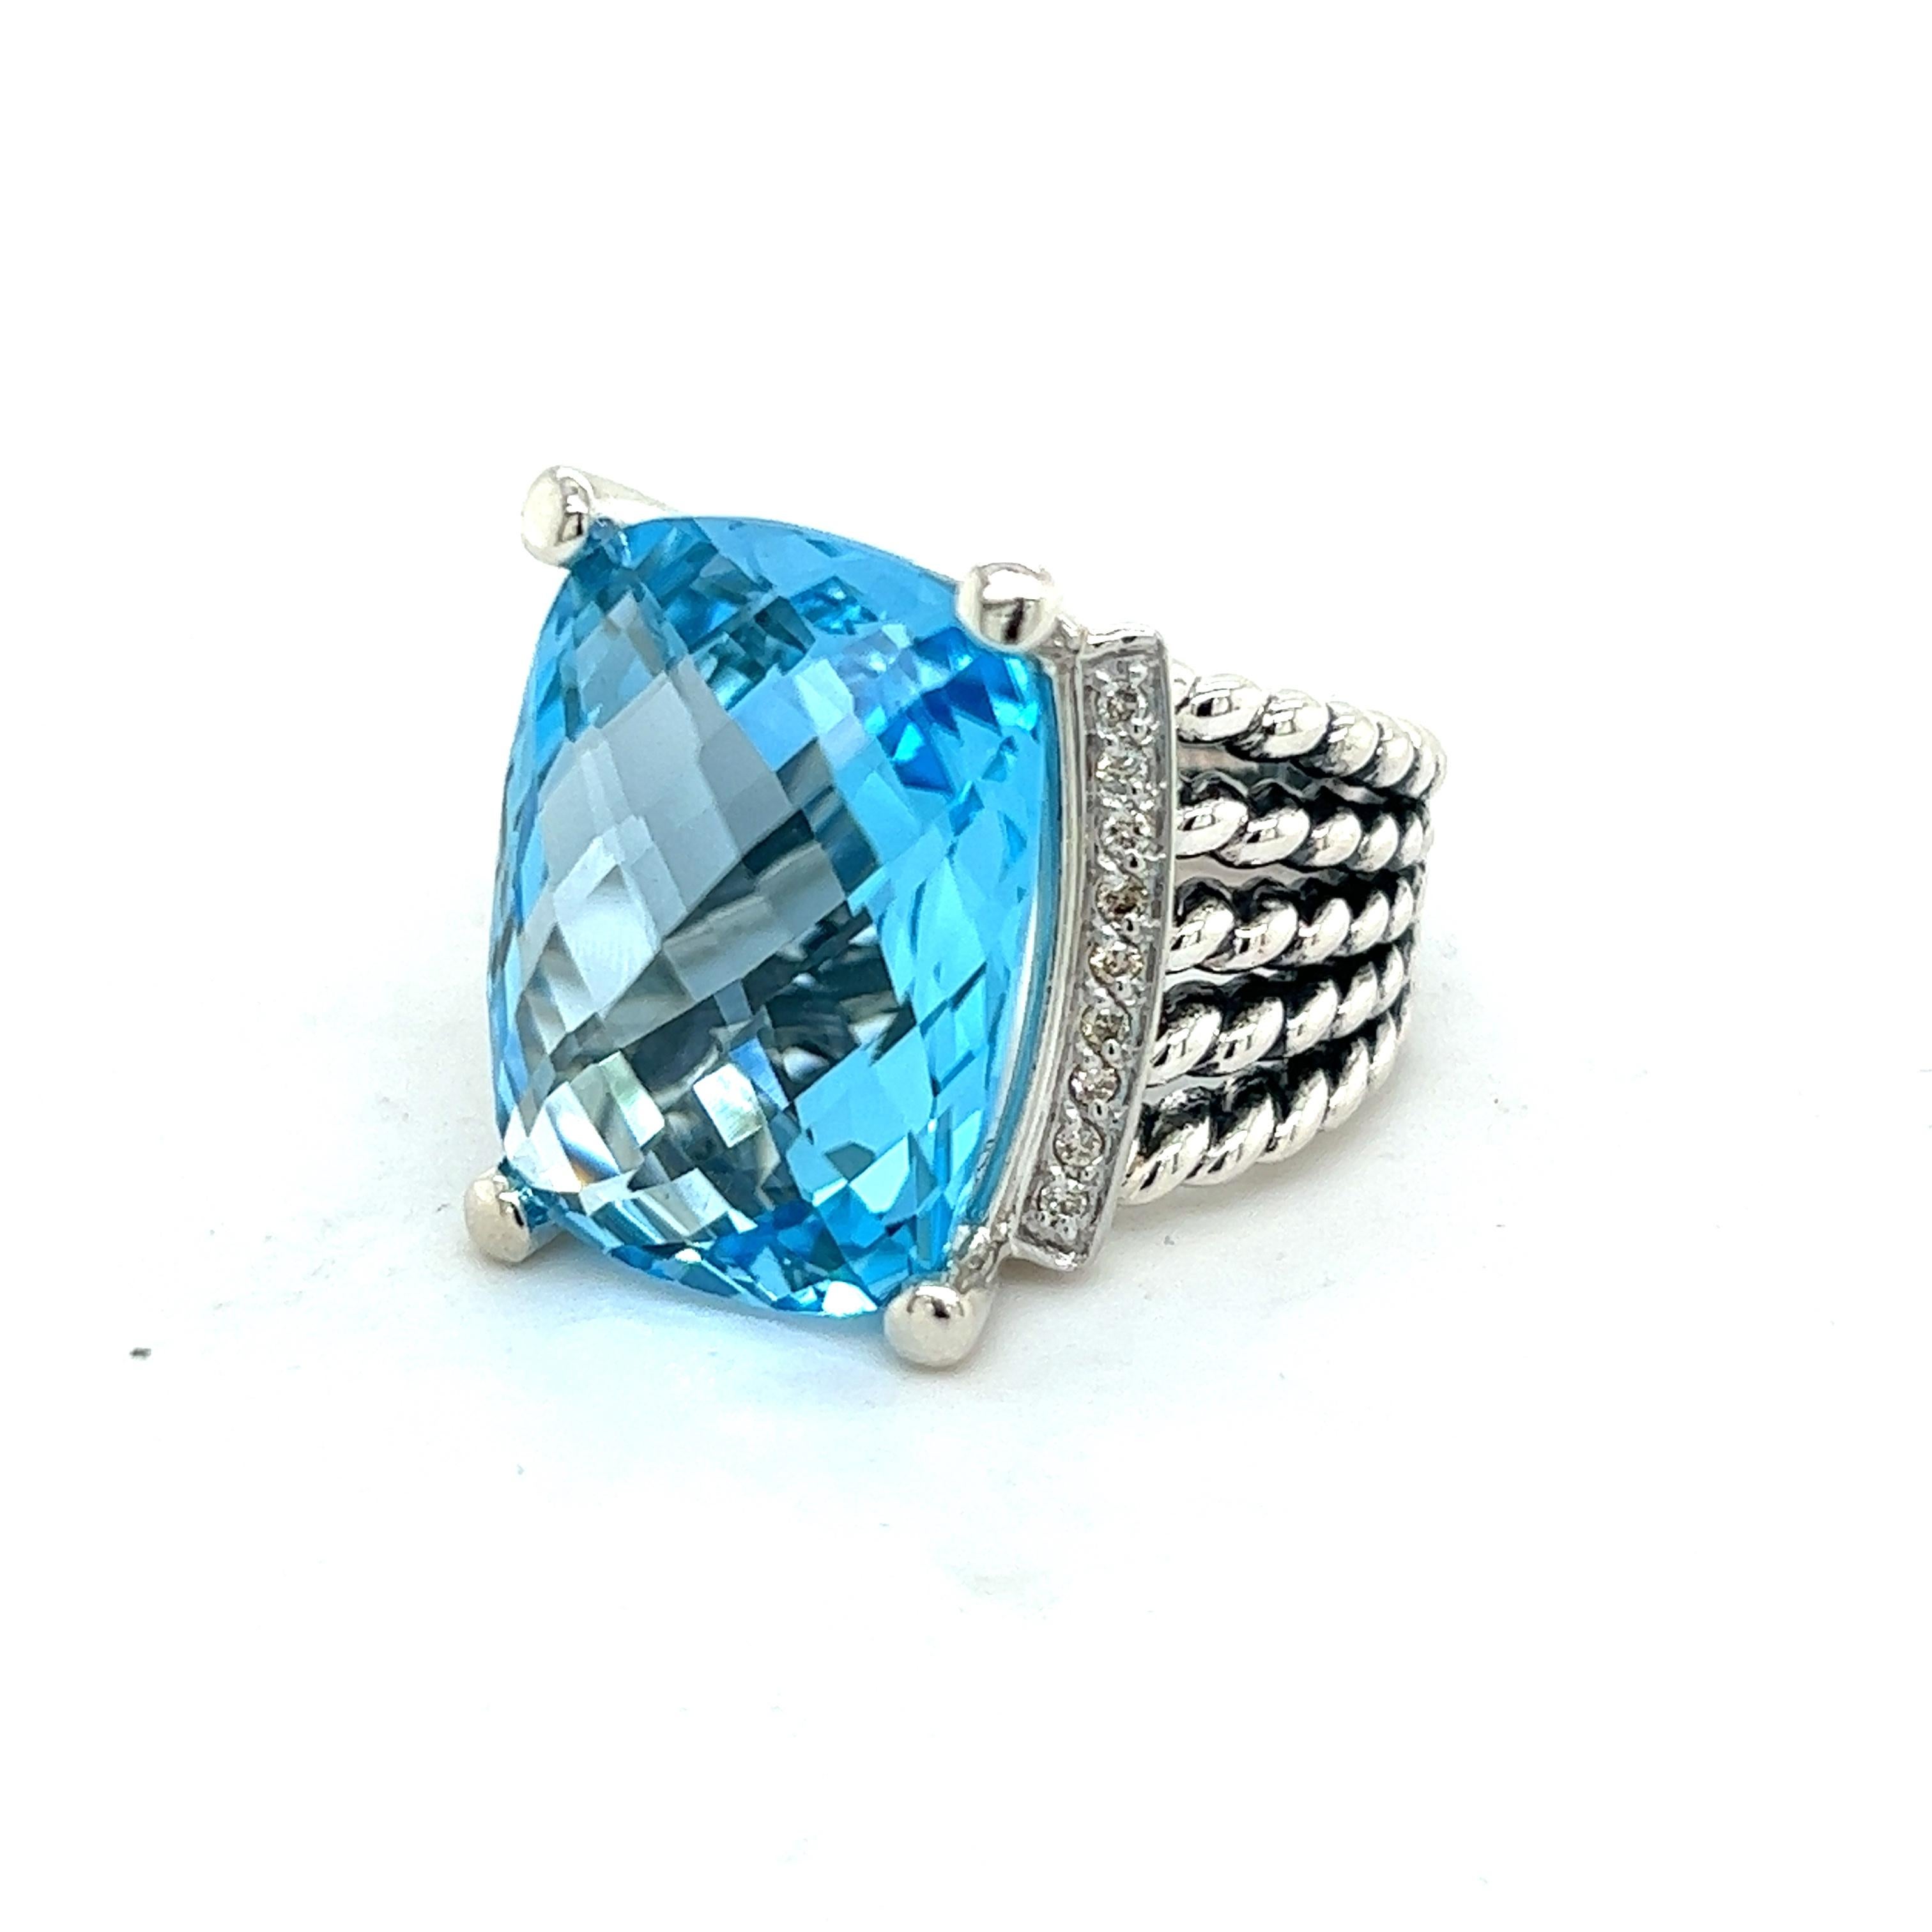 Brilliant Cut David Yurman Authentic Estate Diamond Wheaton Blue Topaz Ring 8.5 Silver